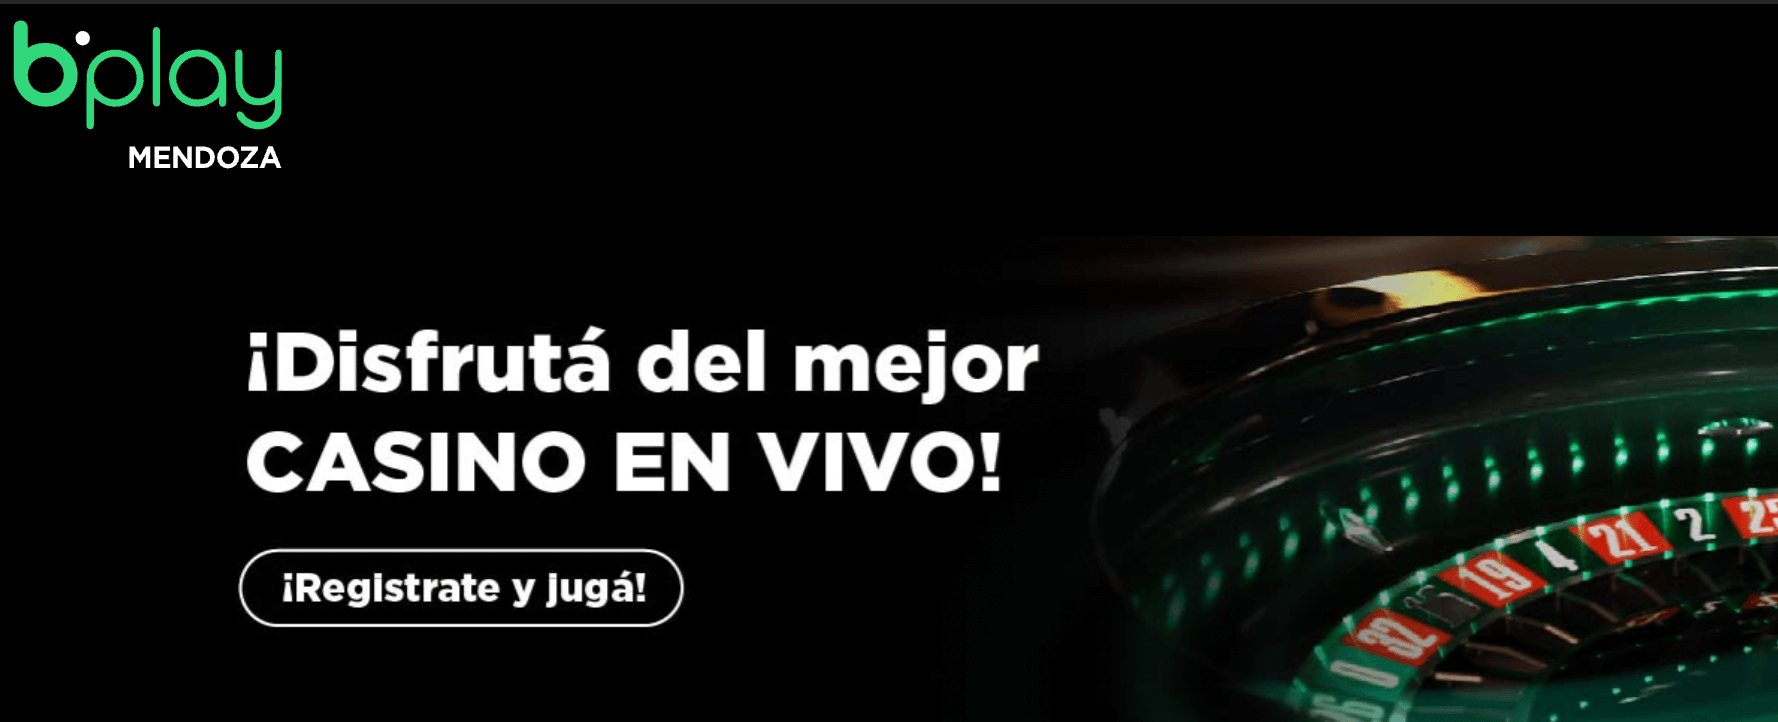 El casino online bplay desembarca en Mendoza